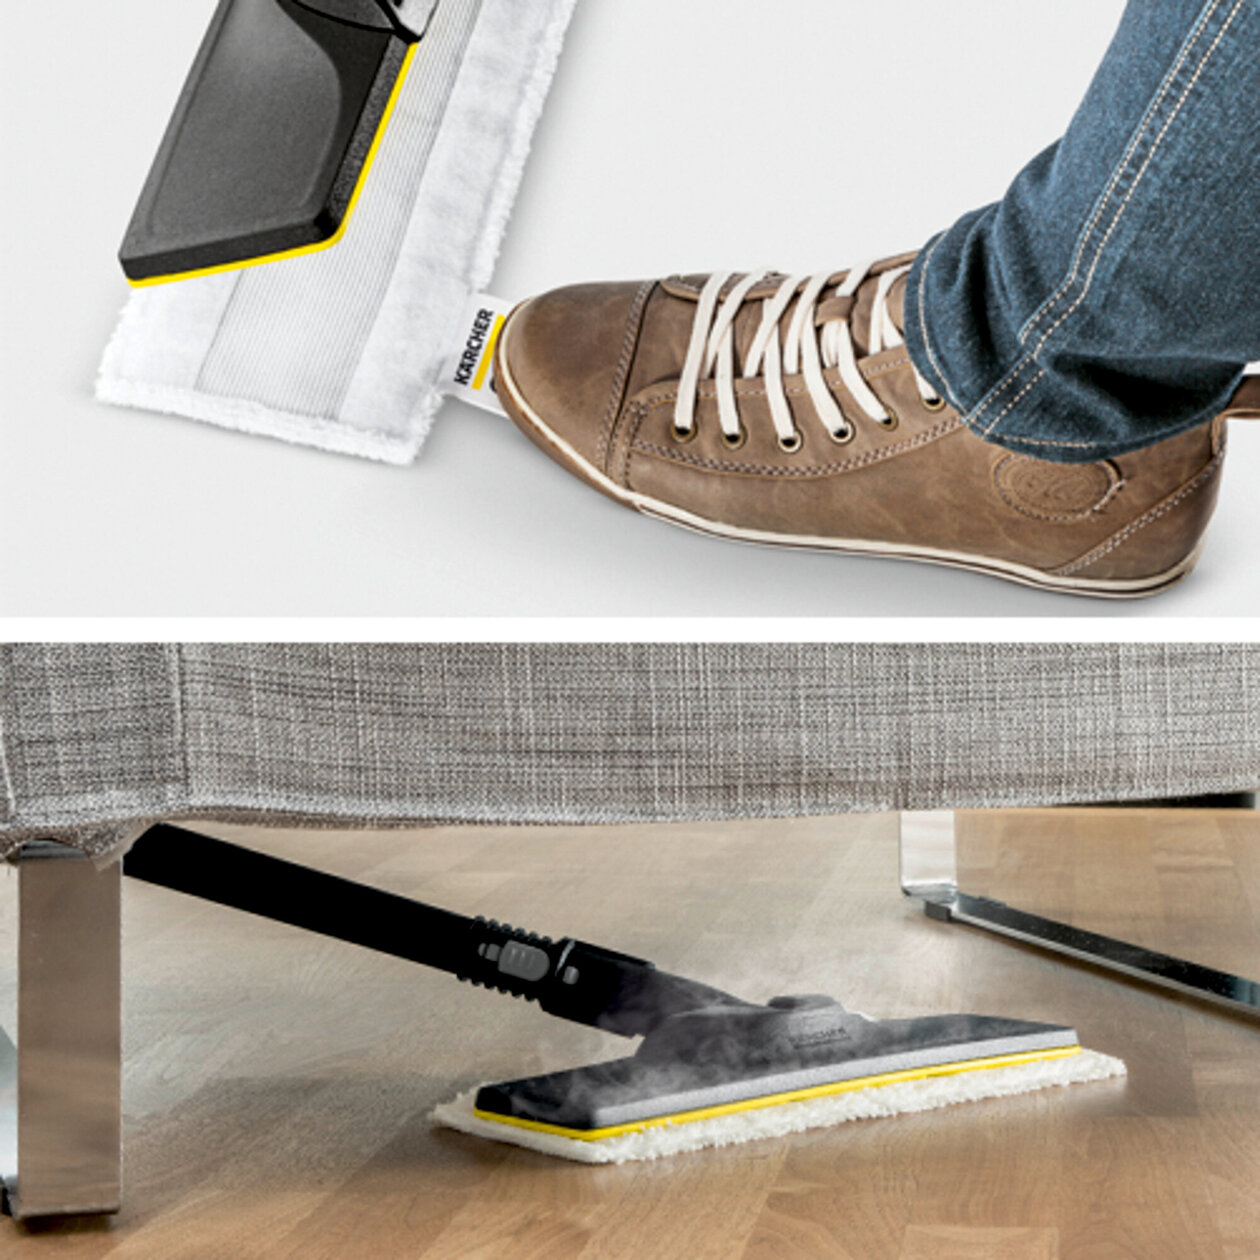  Parný čistič SC 5 EasyFix Premium Iron: Súprava na čistenie podlahy EasyFix s flexibilným kĺbom na podlahovej hubici a pohodlným suchým zipsom na upevnenie utierky na podlahu